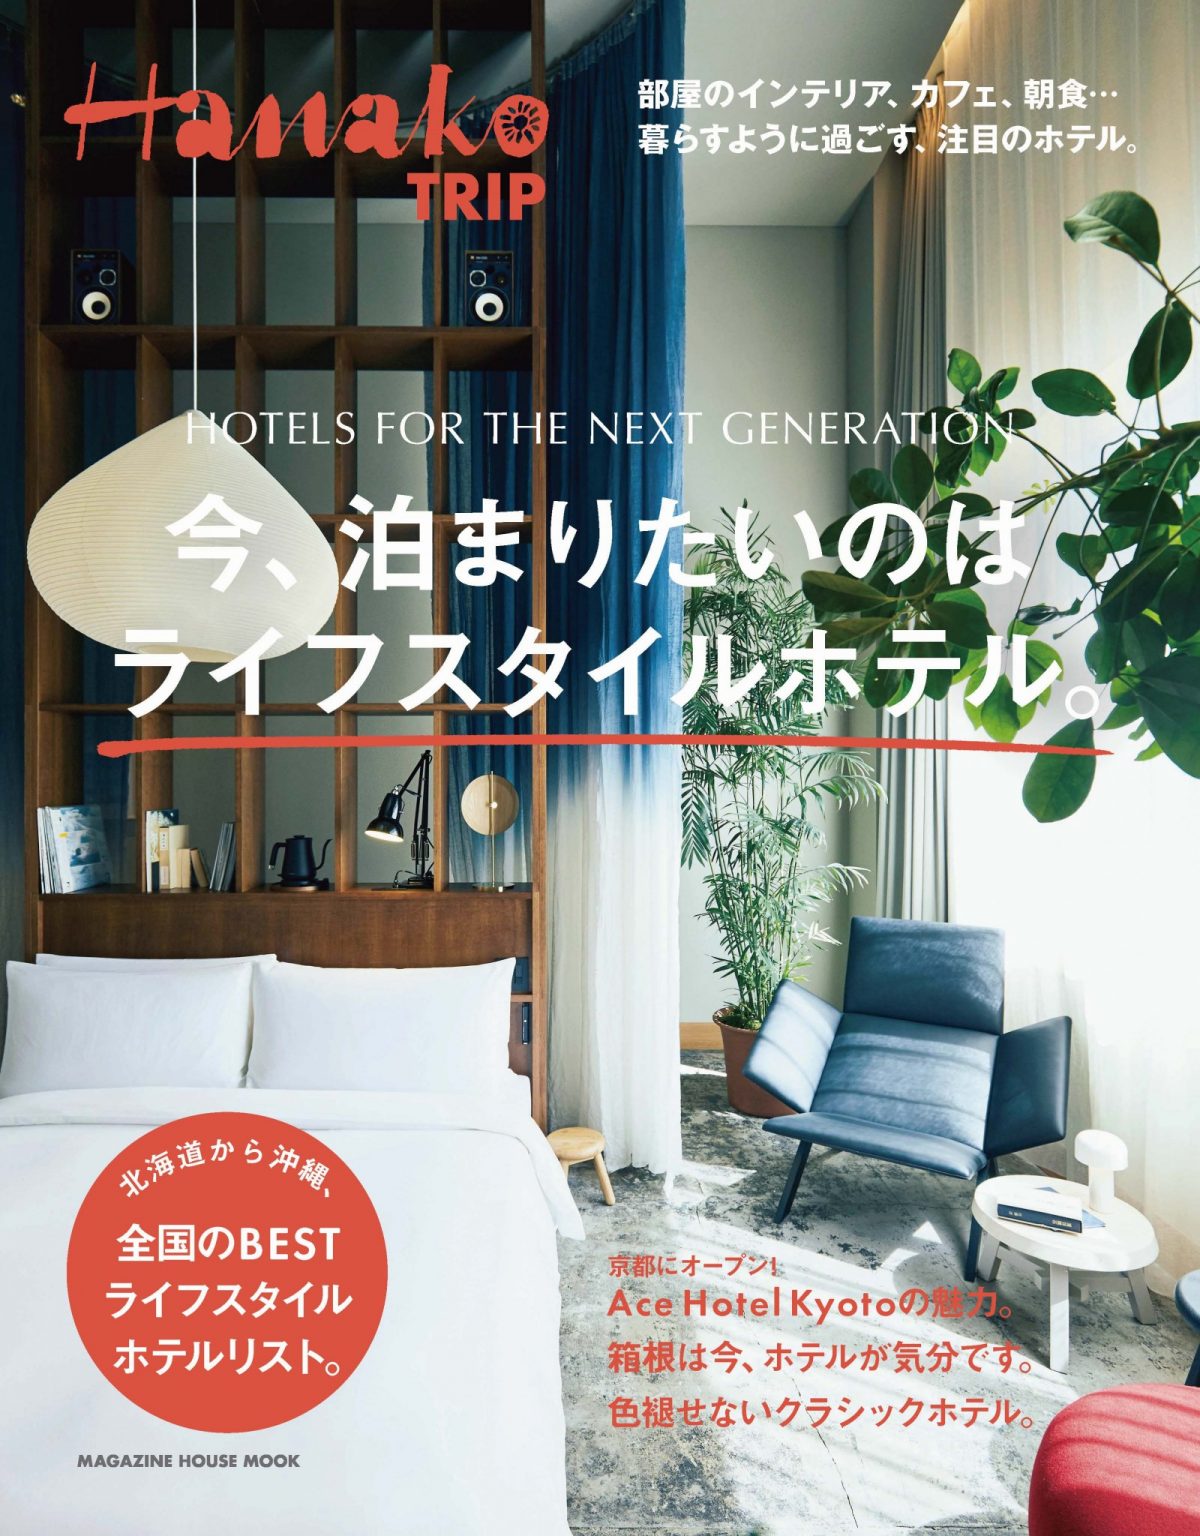 No. 5419 Hanako TRIP 今、泊まりたいのはライフスタイルホテル。Hanako TRIP 今、泊まりたいのはライフスタイルホテル。